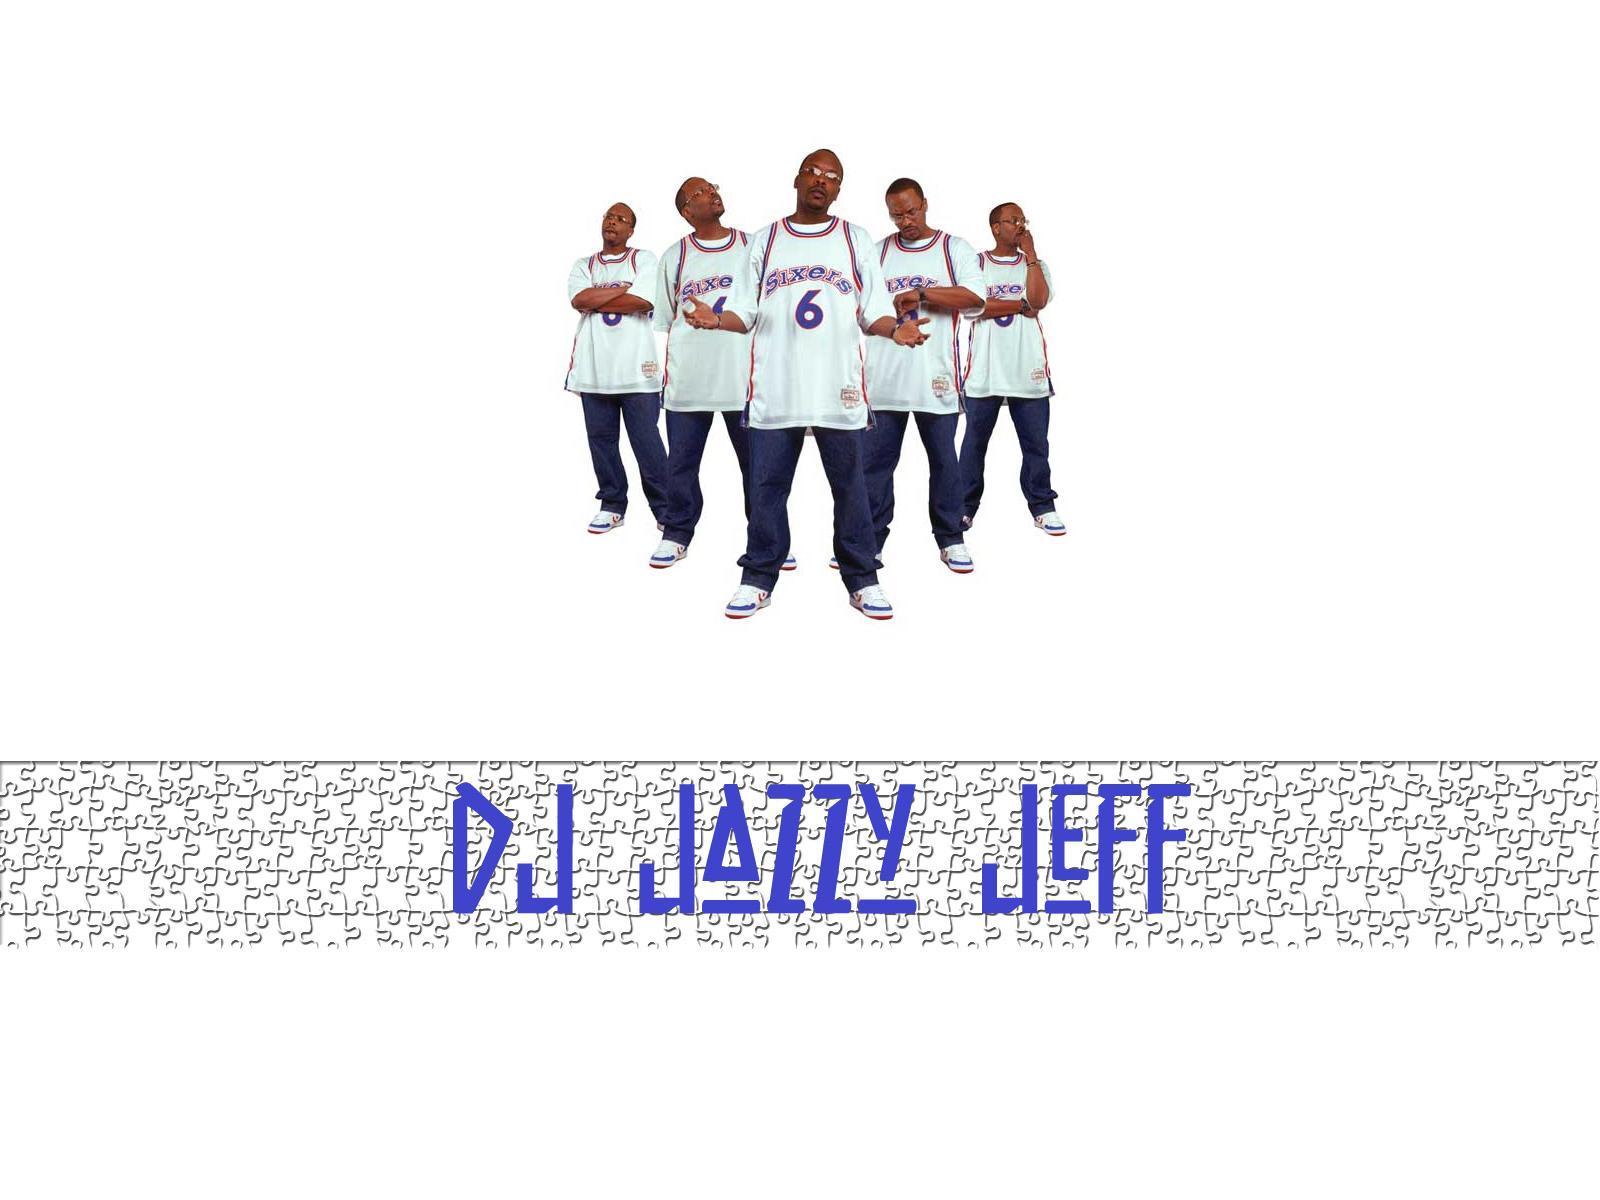 DJ jazzy jeff 1